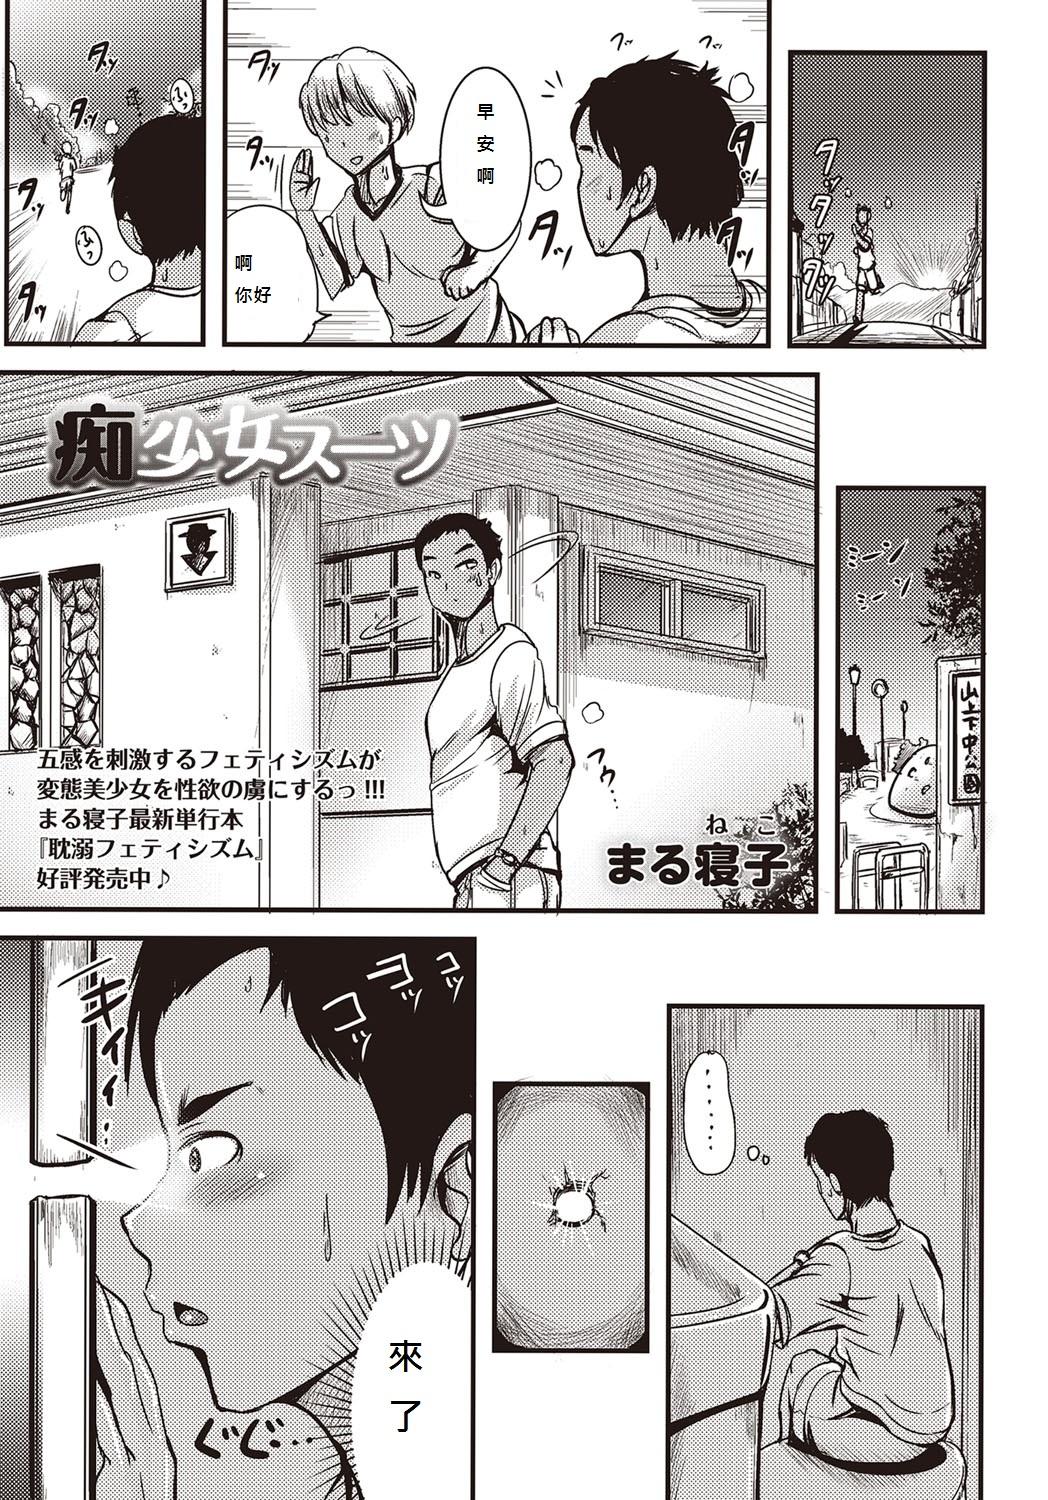 Casado Chishoujo Suit Stockings - Page 1